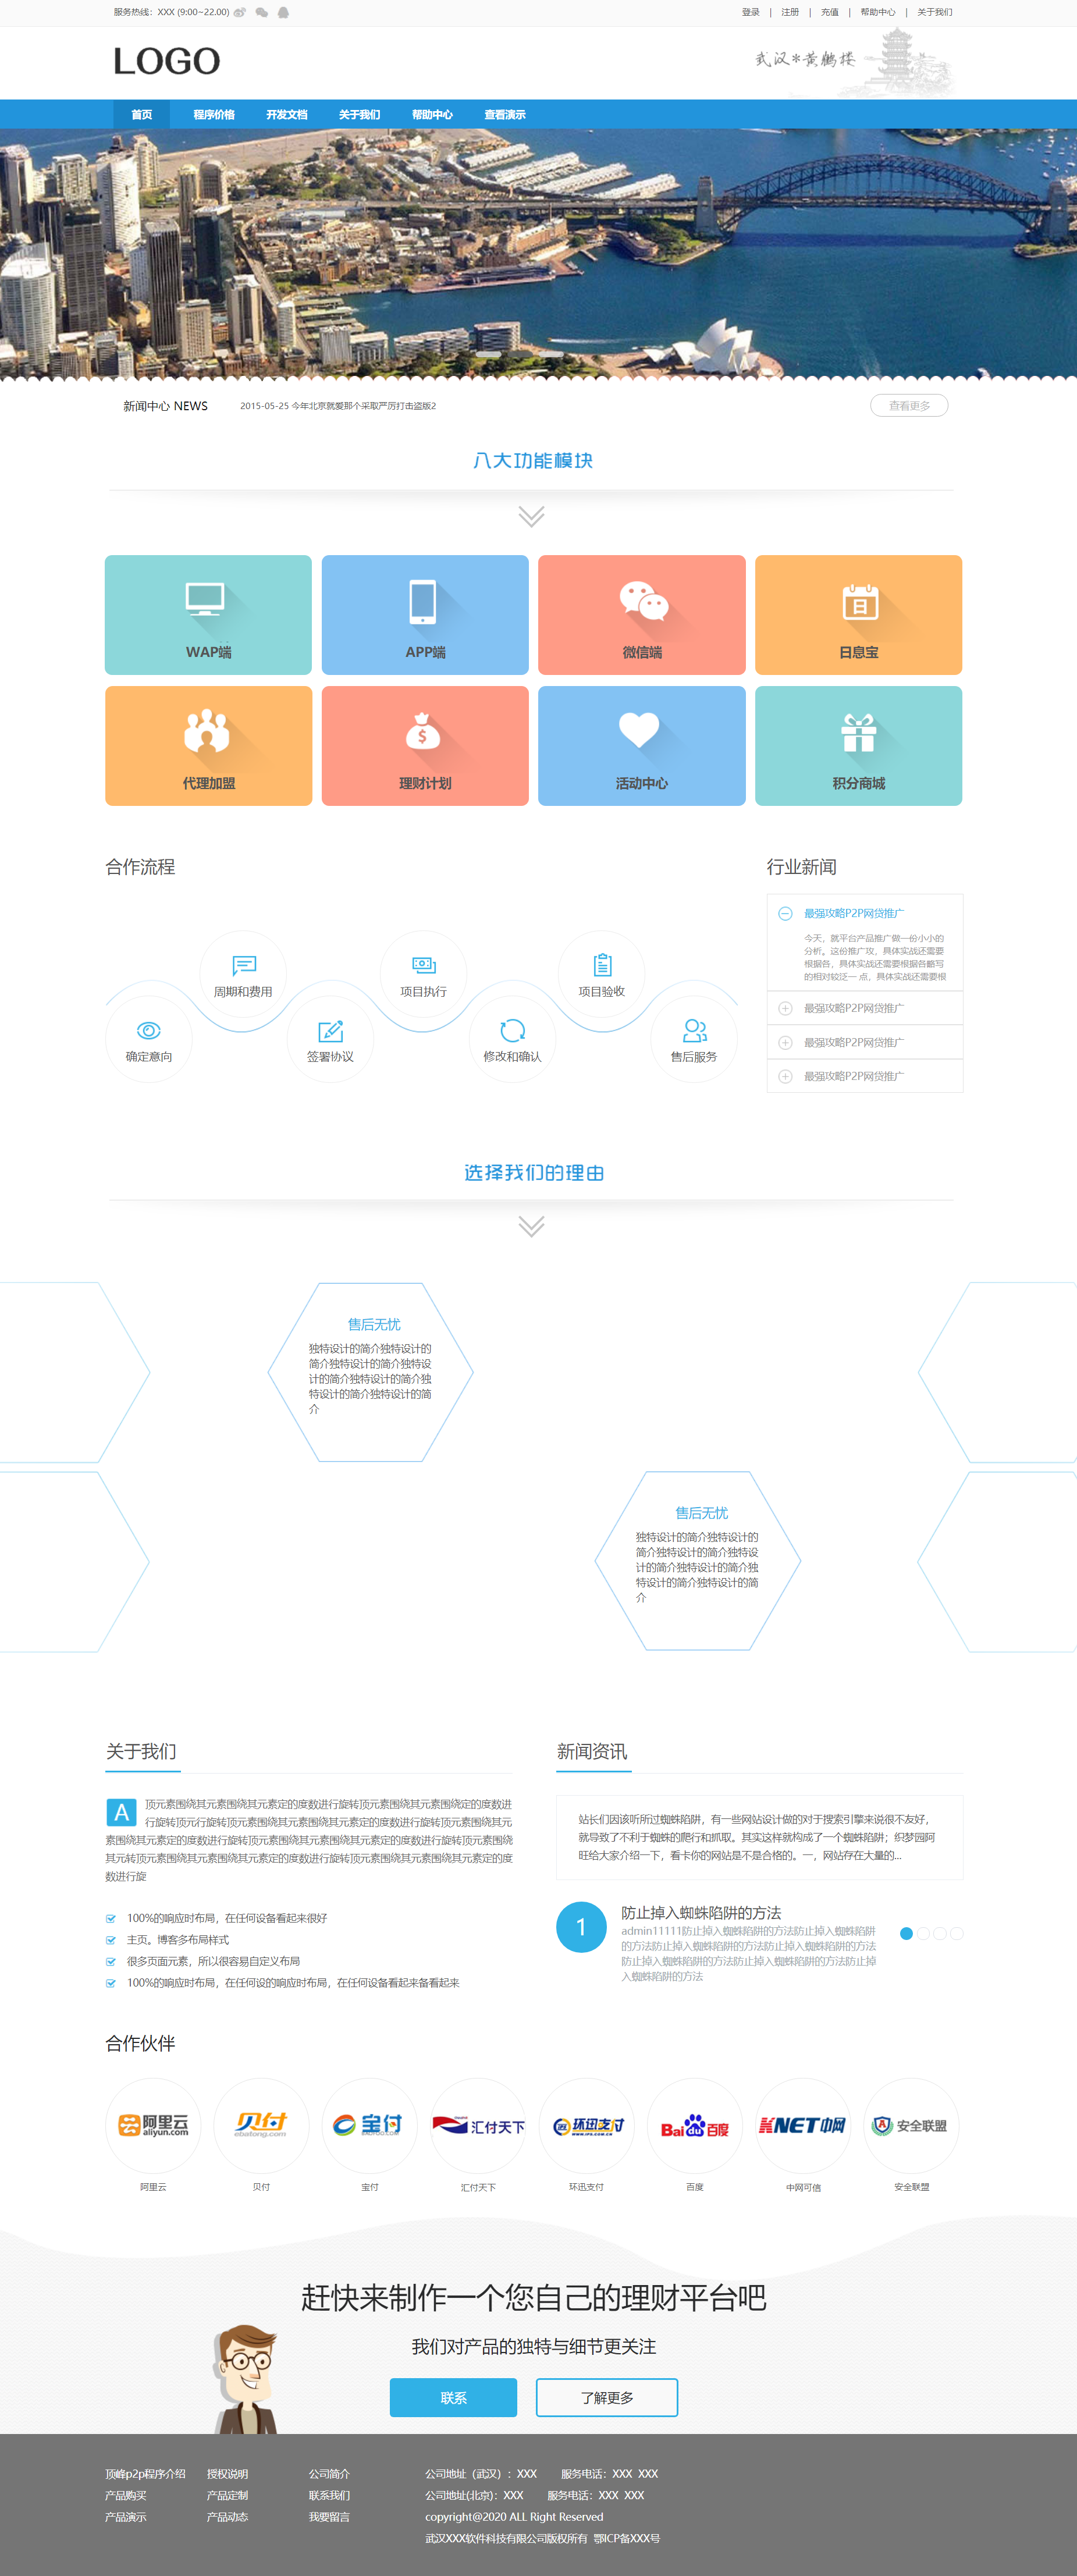 蓝色精美风格响应式理财平台企业网站模板